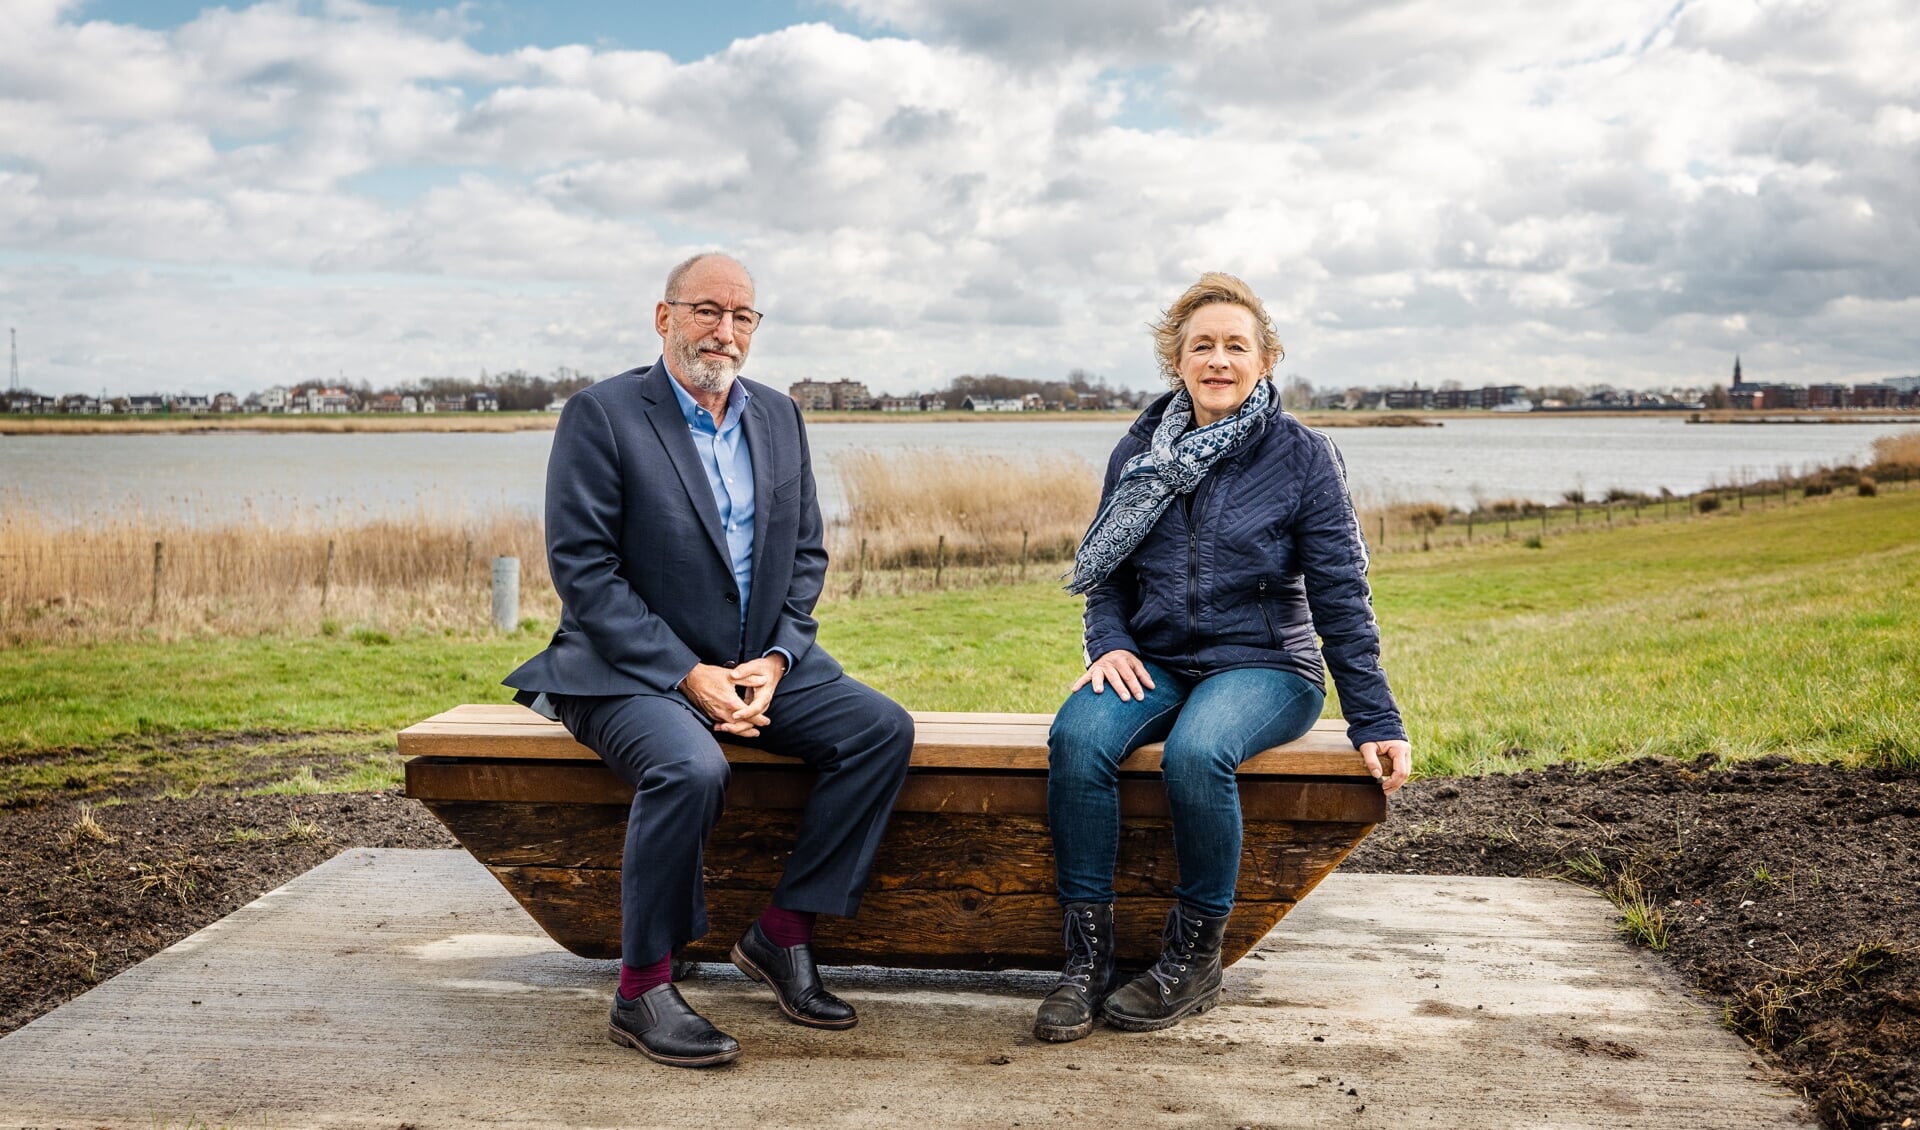 Heemraad Henk van der Drift en Petra van Nes-de Man zitten als eersten op het bankje